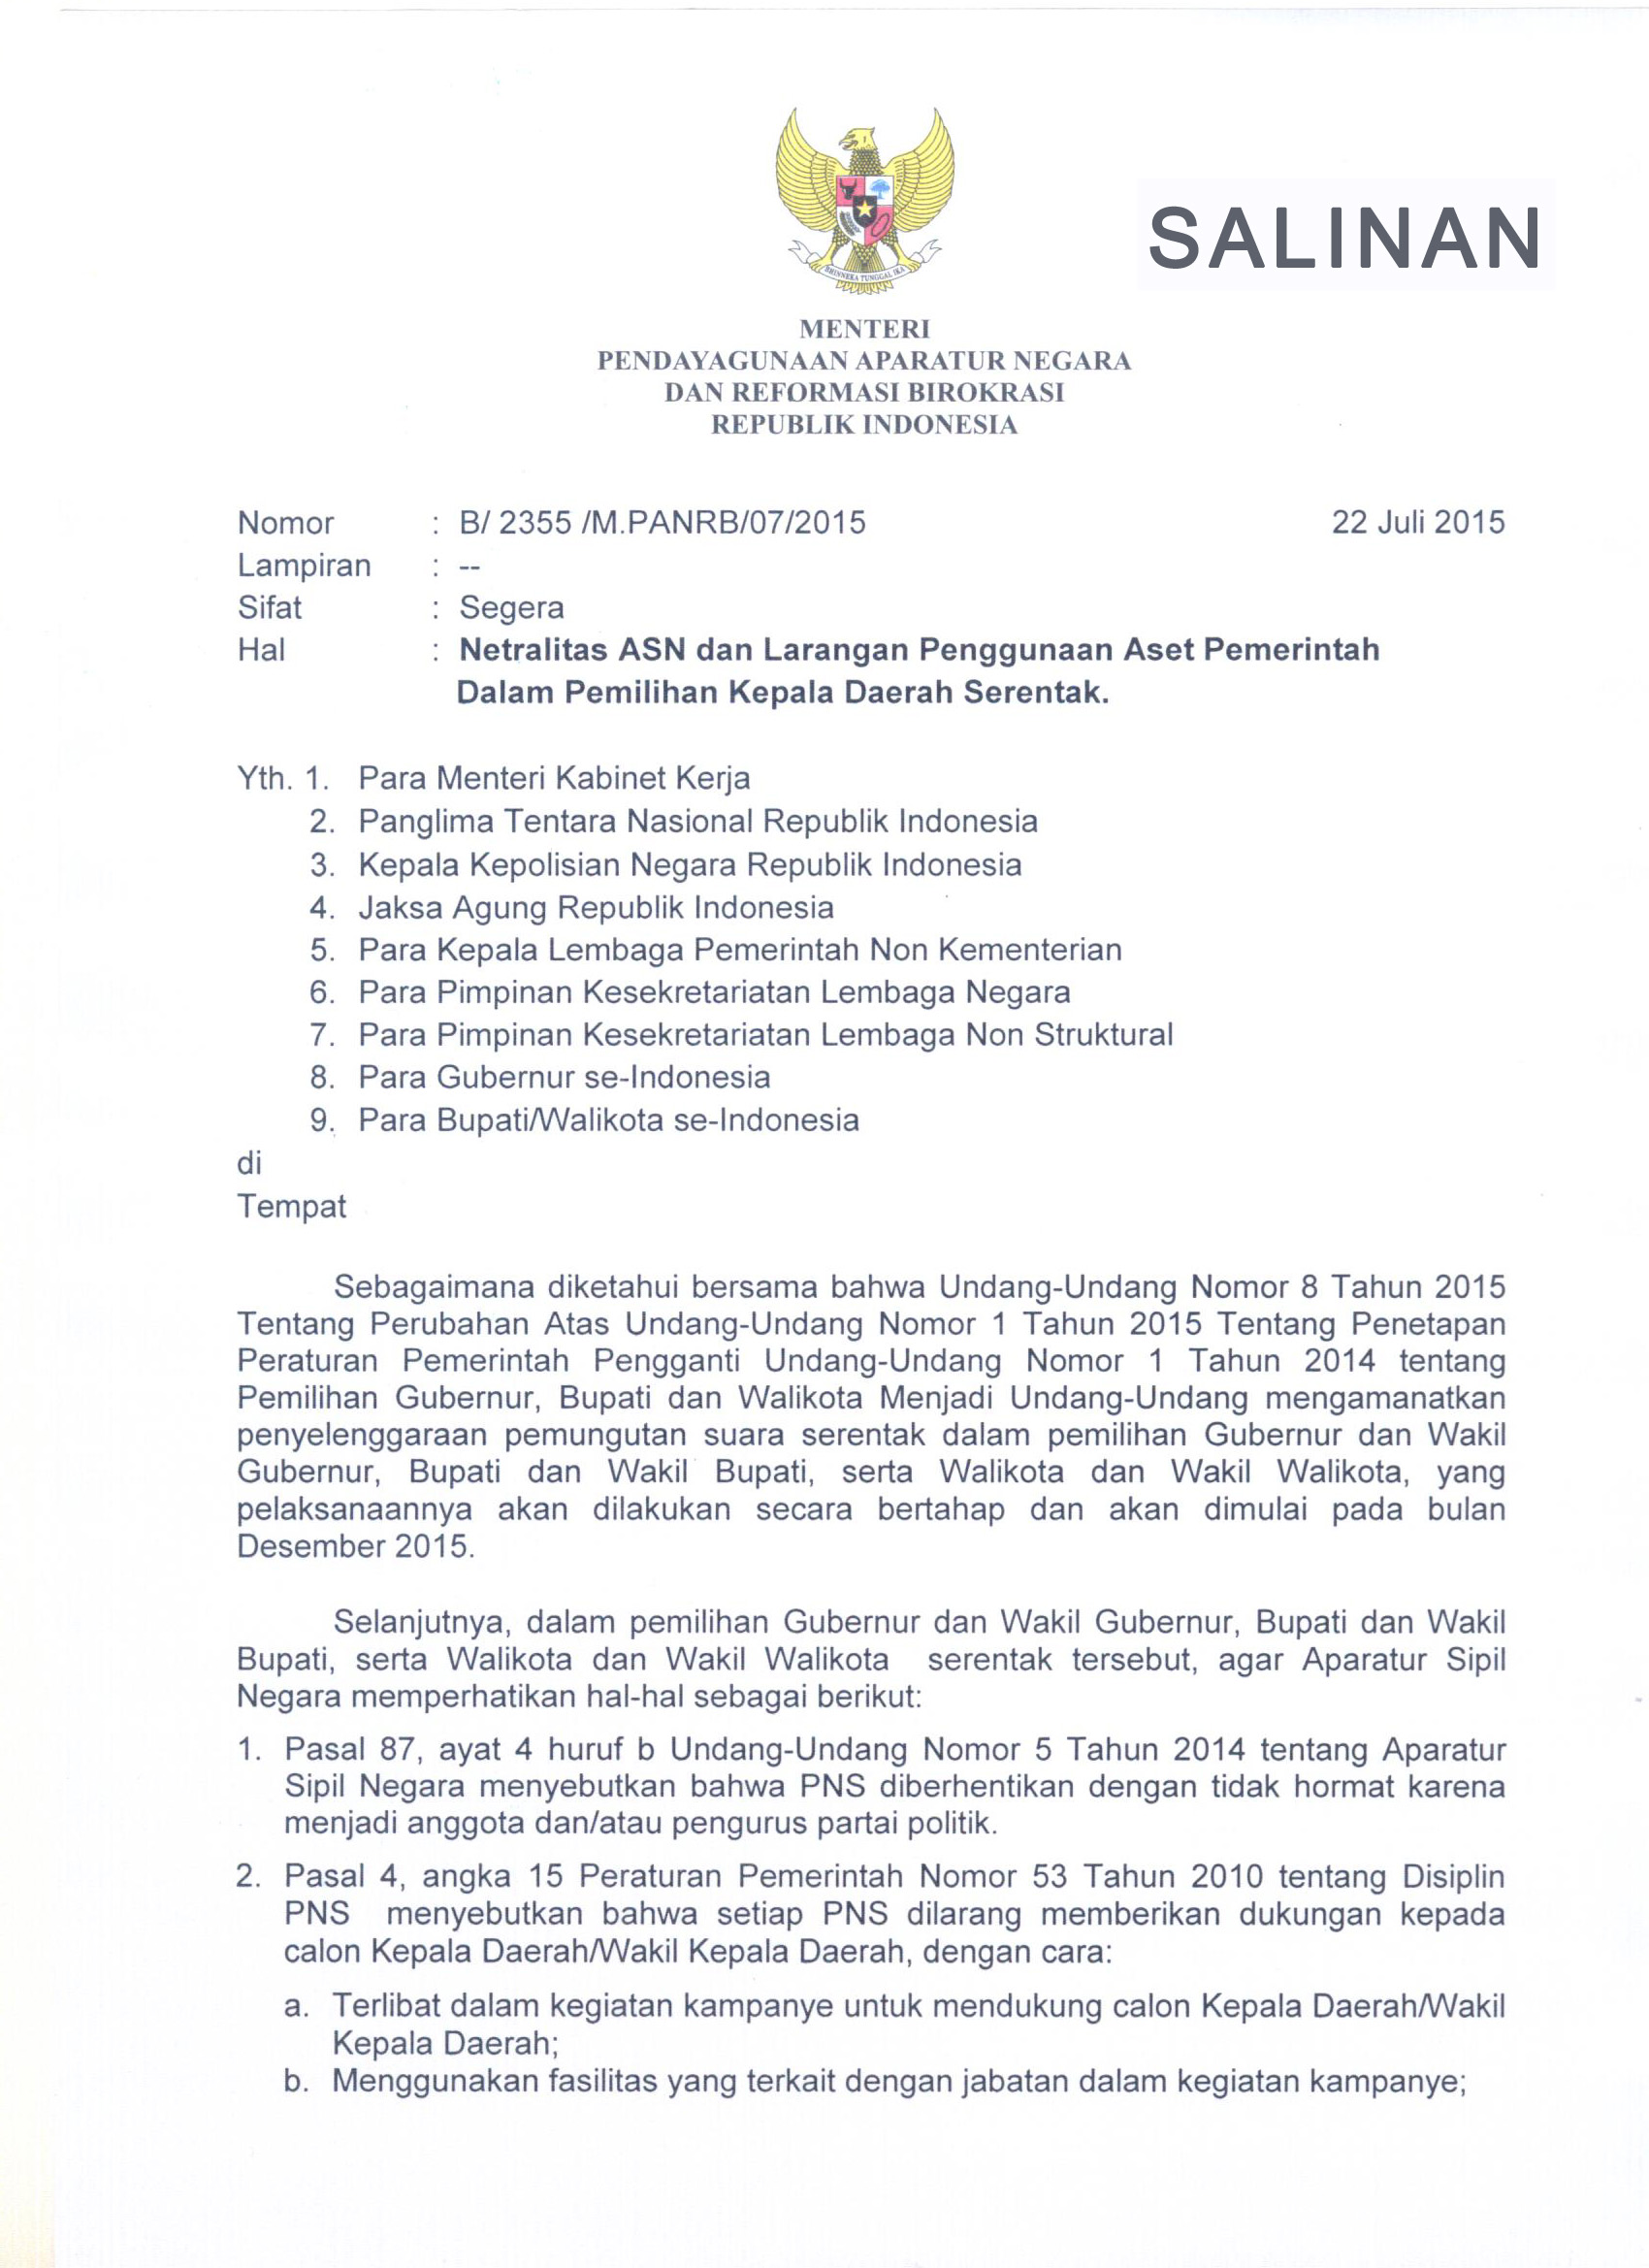 Surat Menteri PANRB Tentang Netralitas ASN & Larangan Penggunaan Aset Pemerintah dalam PILKADA Serentak